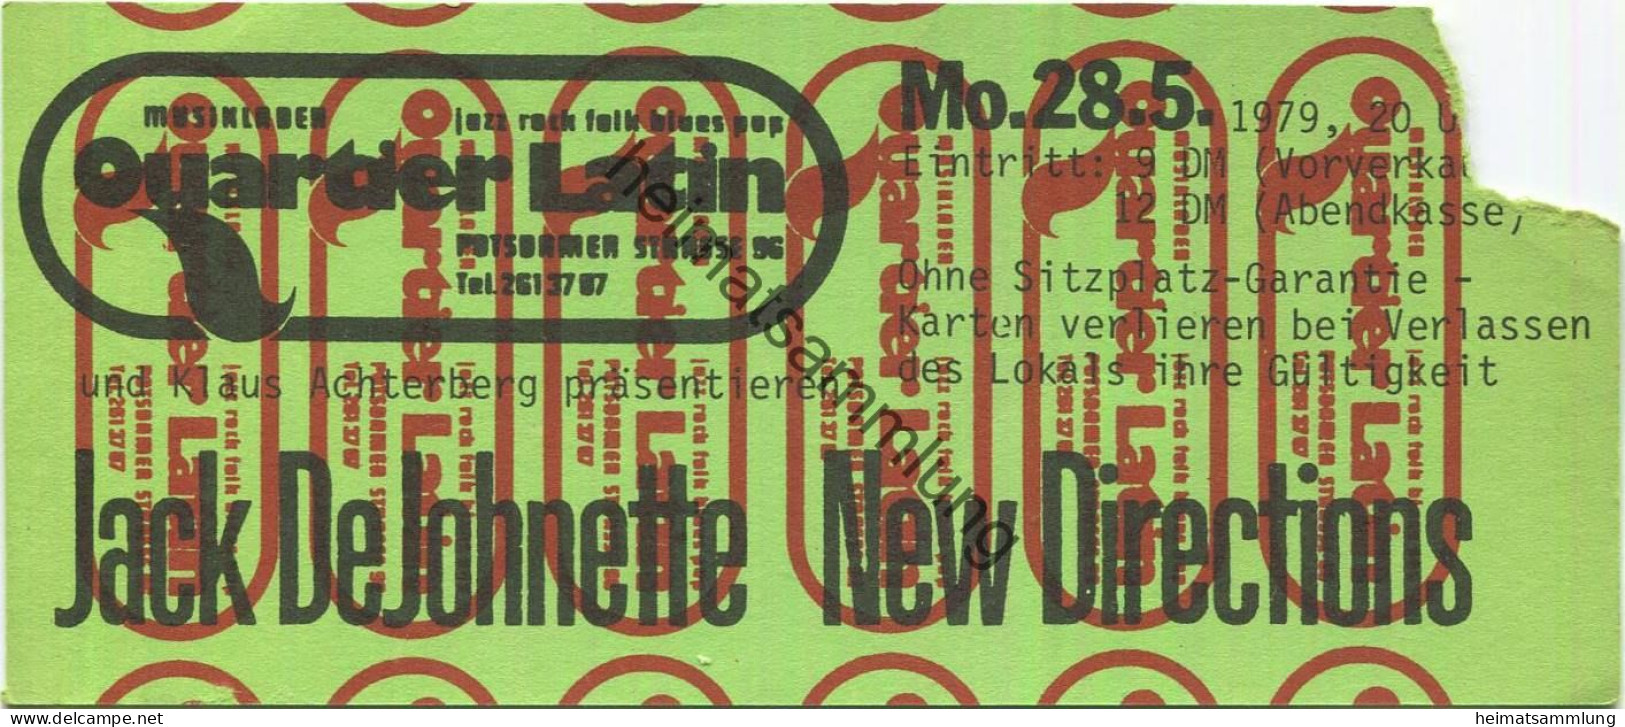 Deutschland - Berlin - Quartier Latin Und Klaus Achterberg - Jack De Johnette New Directions - Eintrittskarte 1979 - Tickets D'entrée